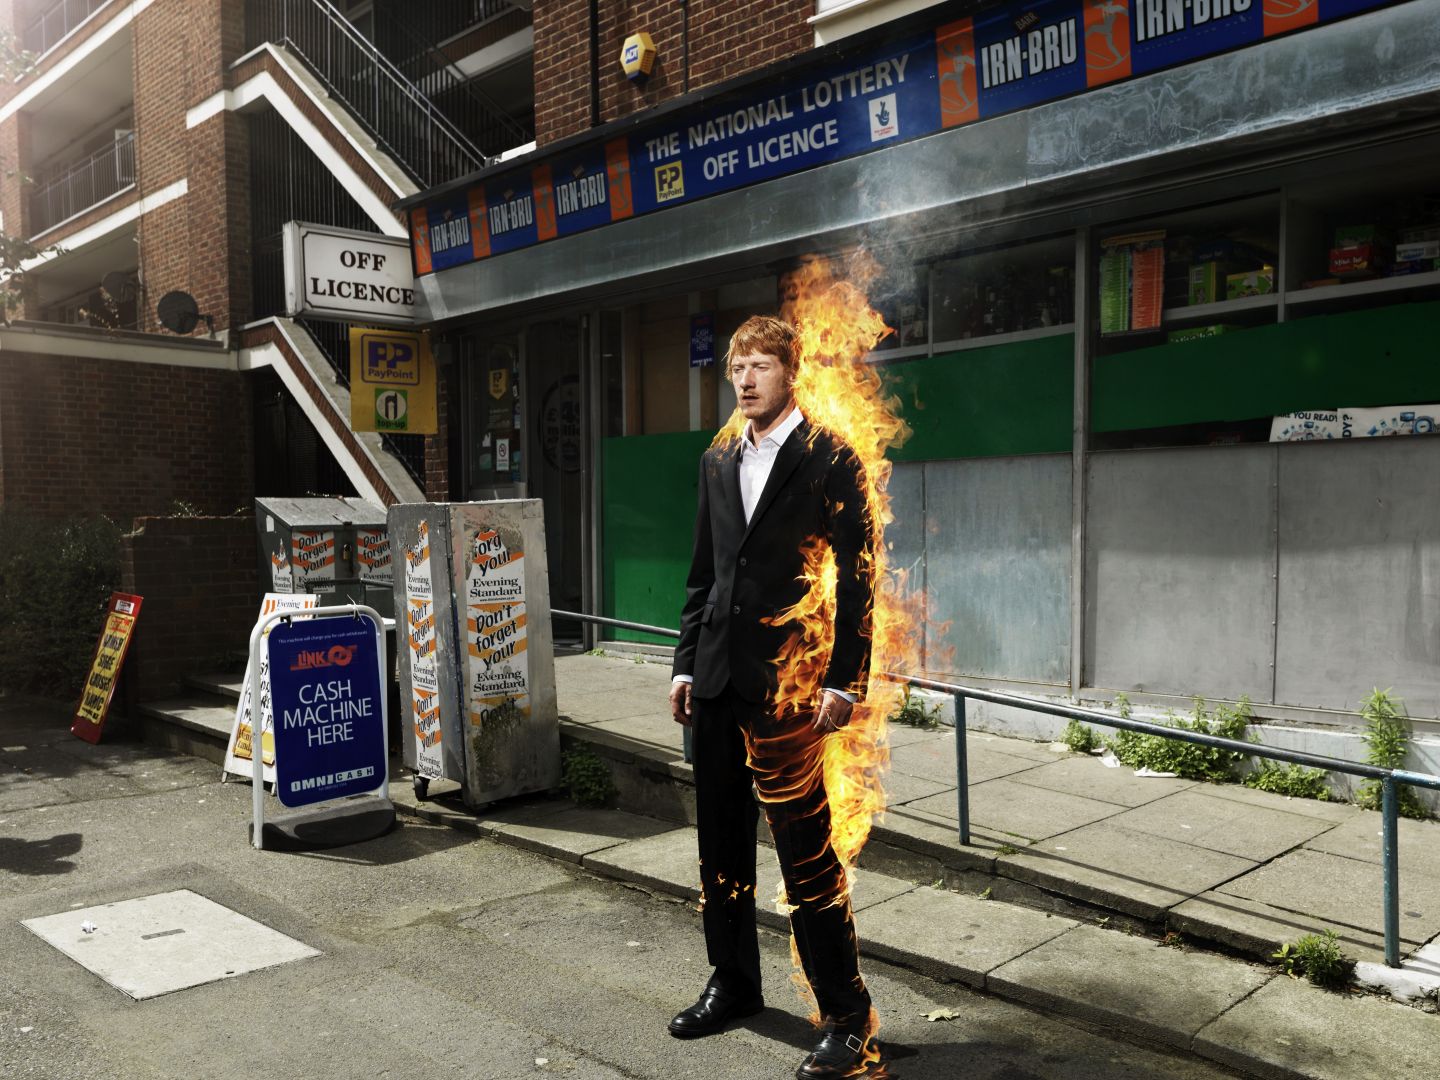 Das Plakatmotiv von Fabian oder: der Gang vor die Hunde zeigt einen brennenden Mann im Anzug vor einer Lotterie.